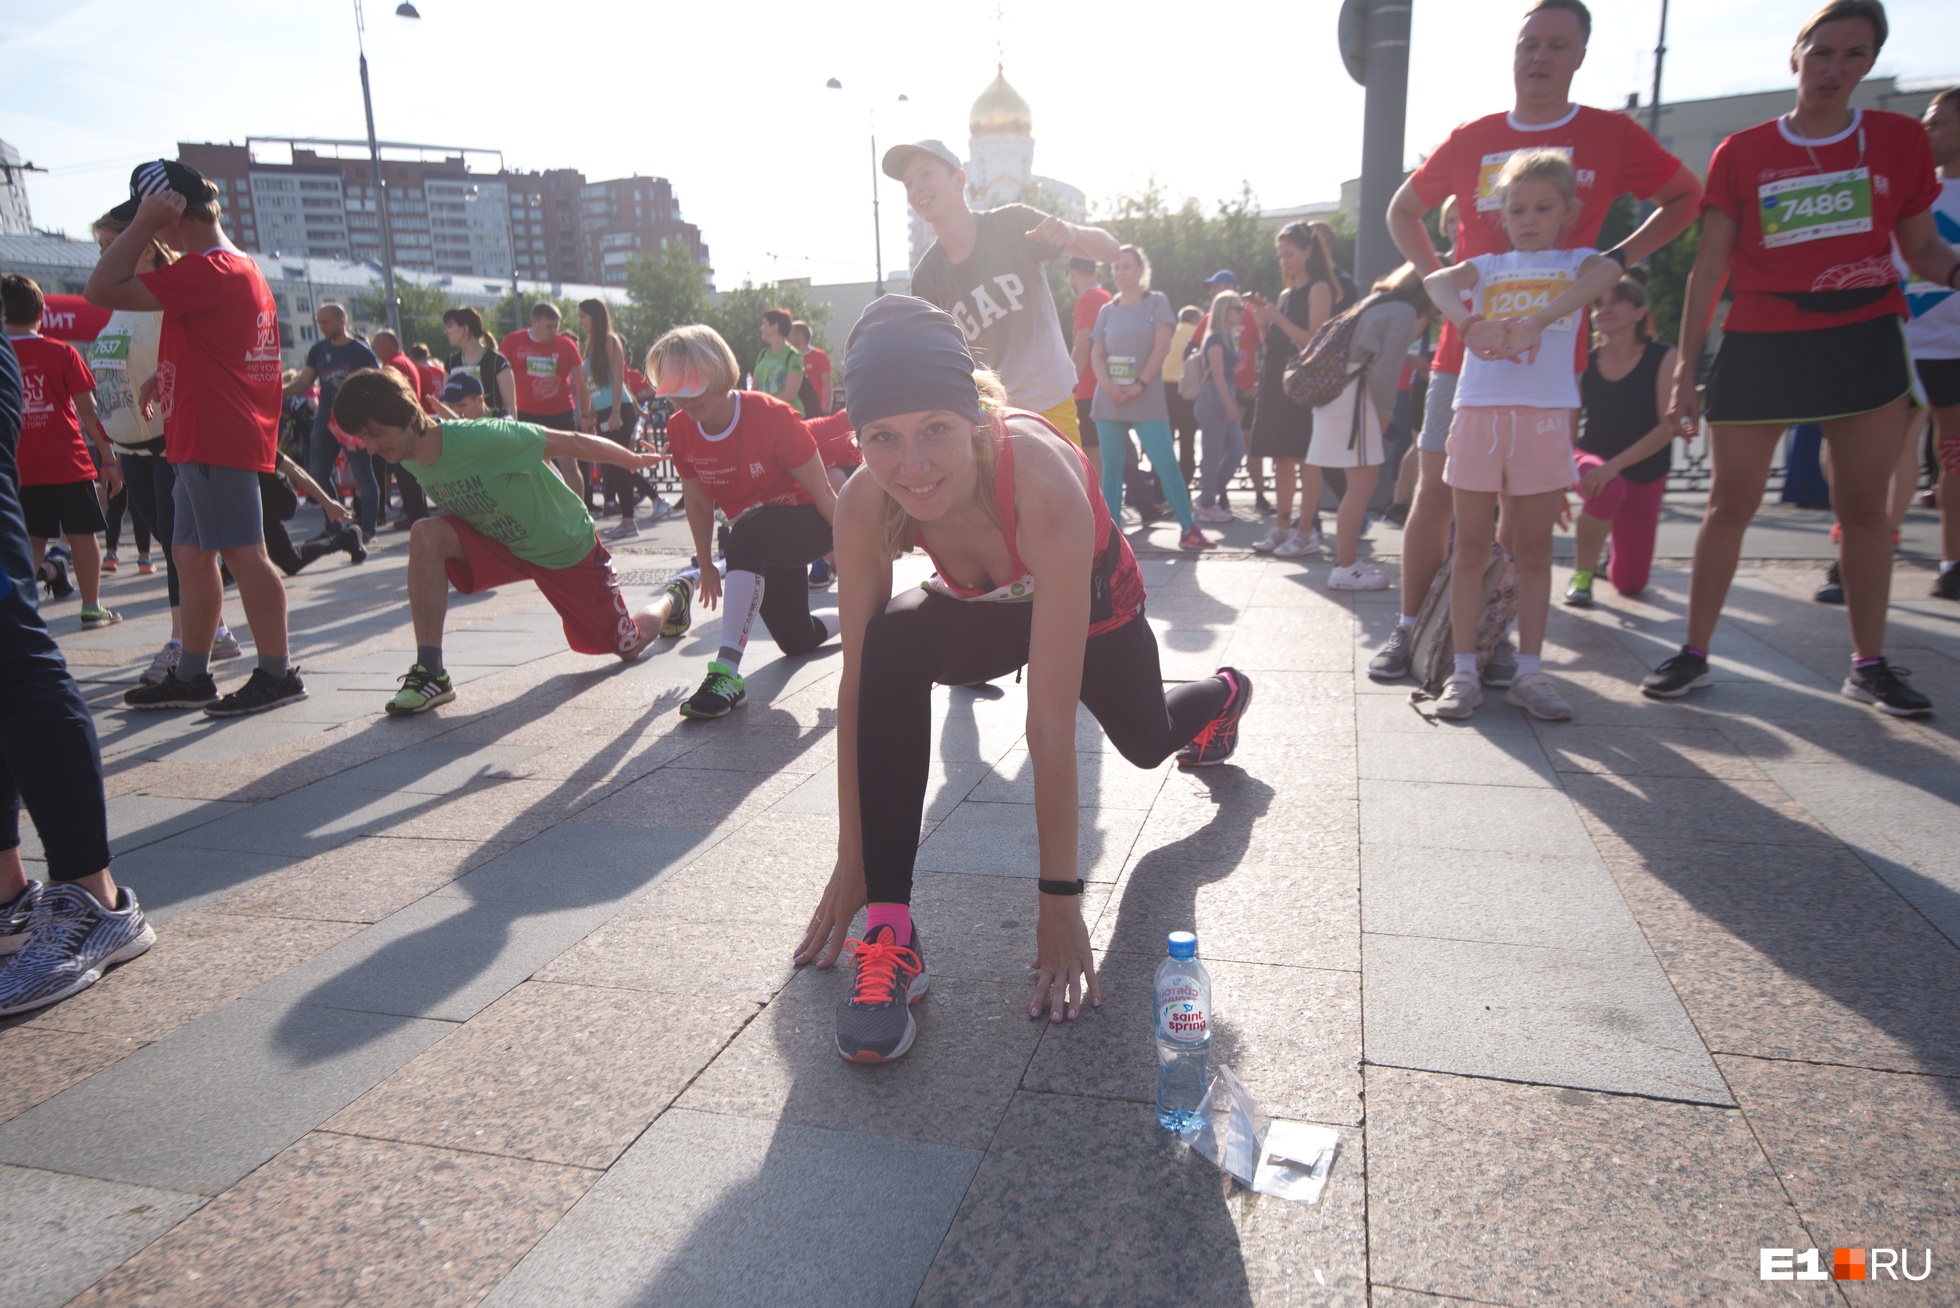 Организаторы марафона в Екатеринбурге рассказали, как побегут тысячи горожан